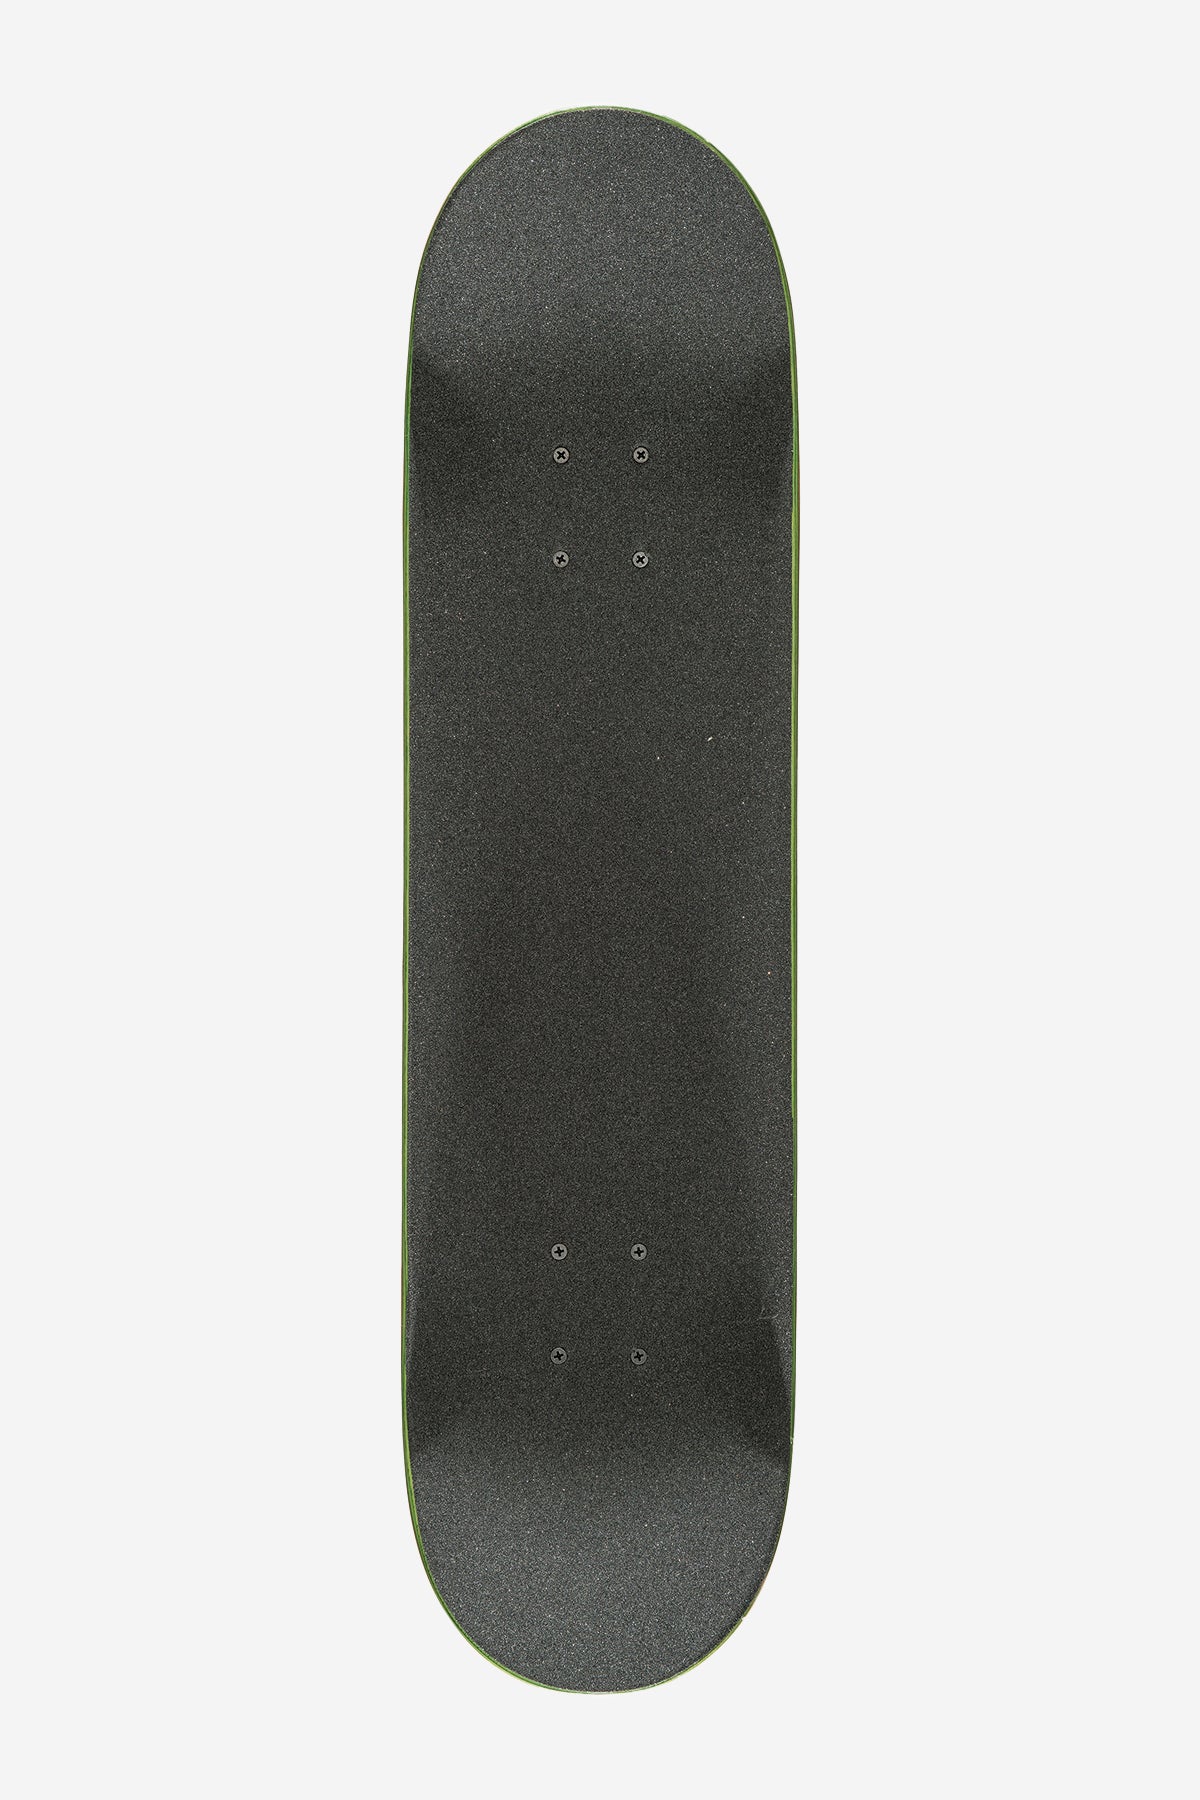 g1 palm off black 8.0" complete skateboard